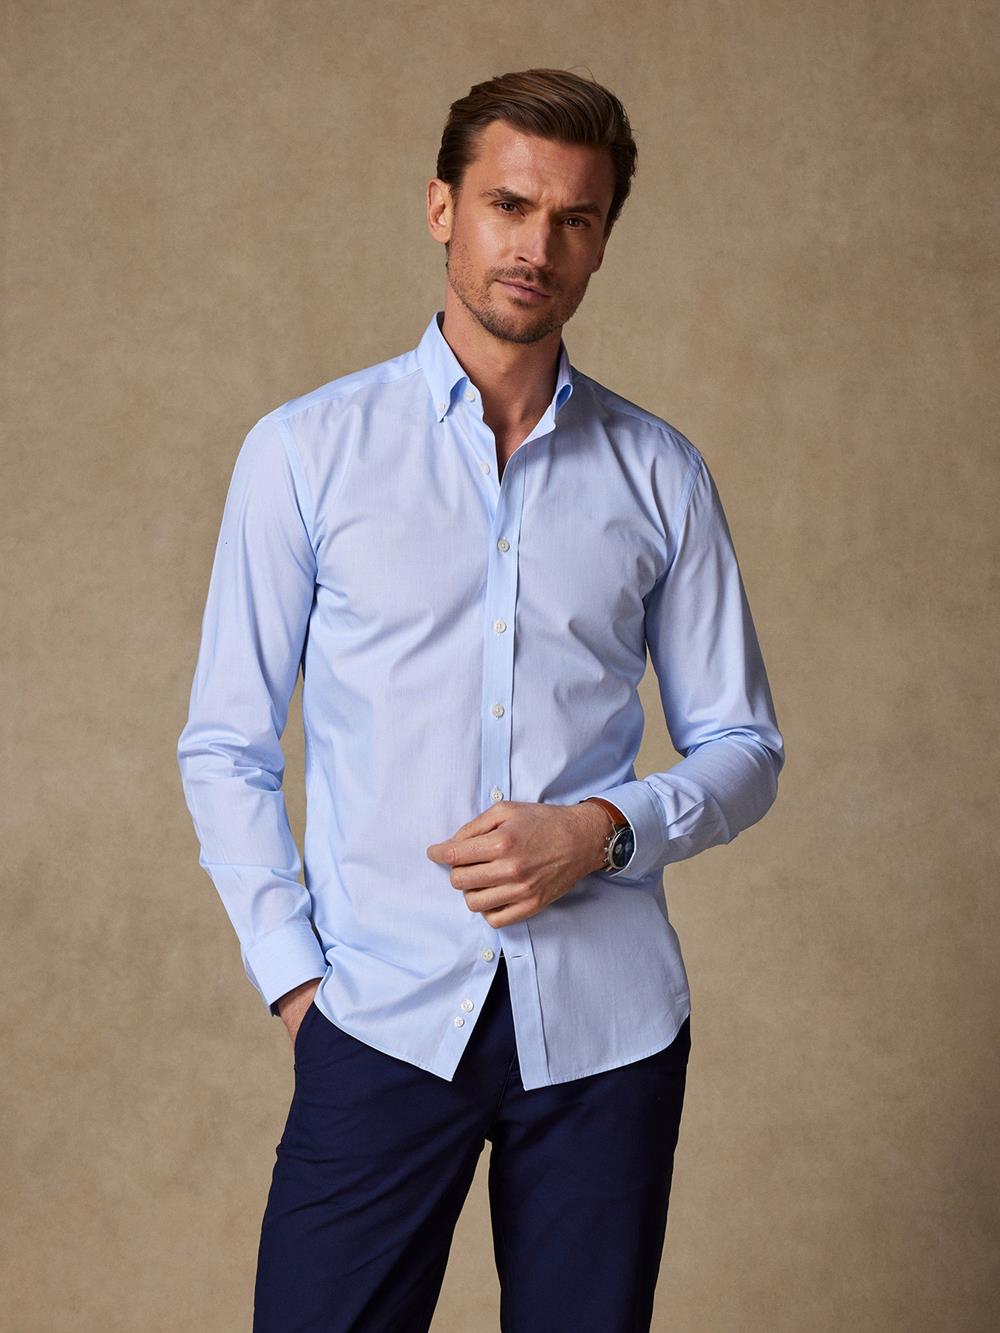 Tailliertes Tailliertes Hemd mit tausend Streifen himmelblau - Buttondown Kragen